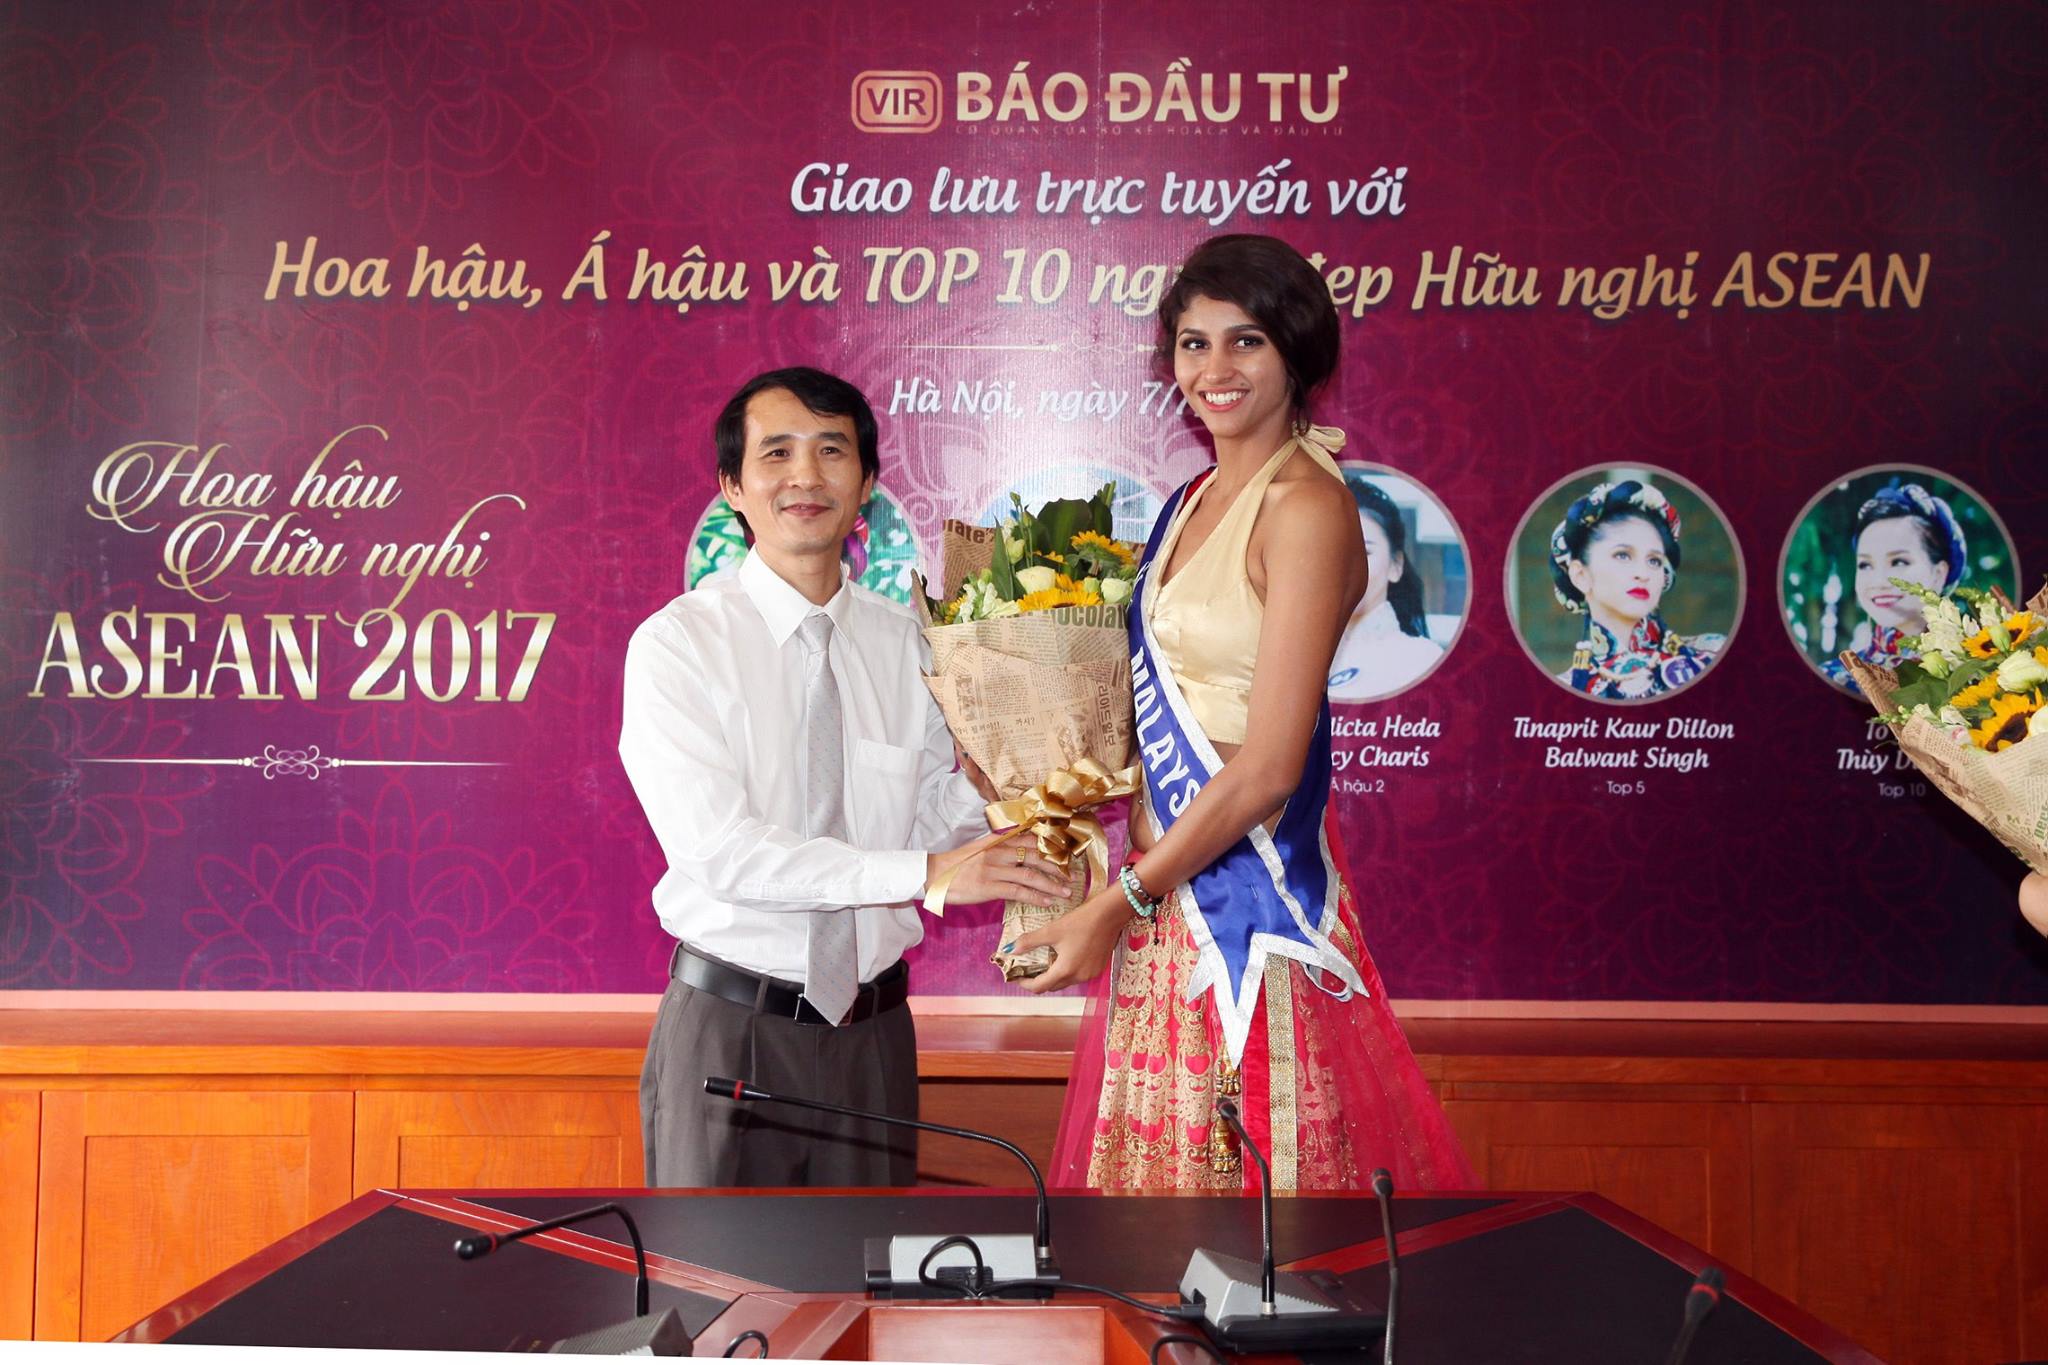 Ông Bùi Đức Hải tặng hoa cho người đẹp Tinaprit Kaur Dillon Balwant Singh đến từ Malaysia - Top 5 và là Người đẹp thân thiện của Miss ASEAN Frendship 2017